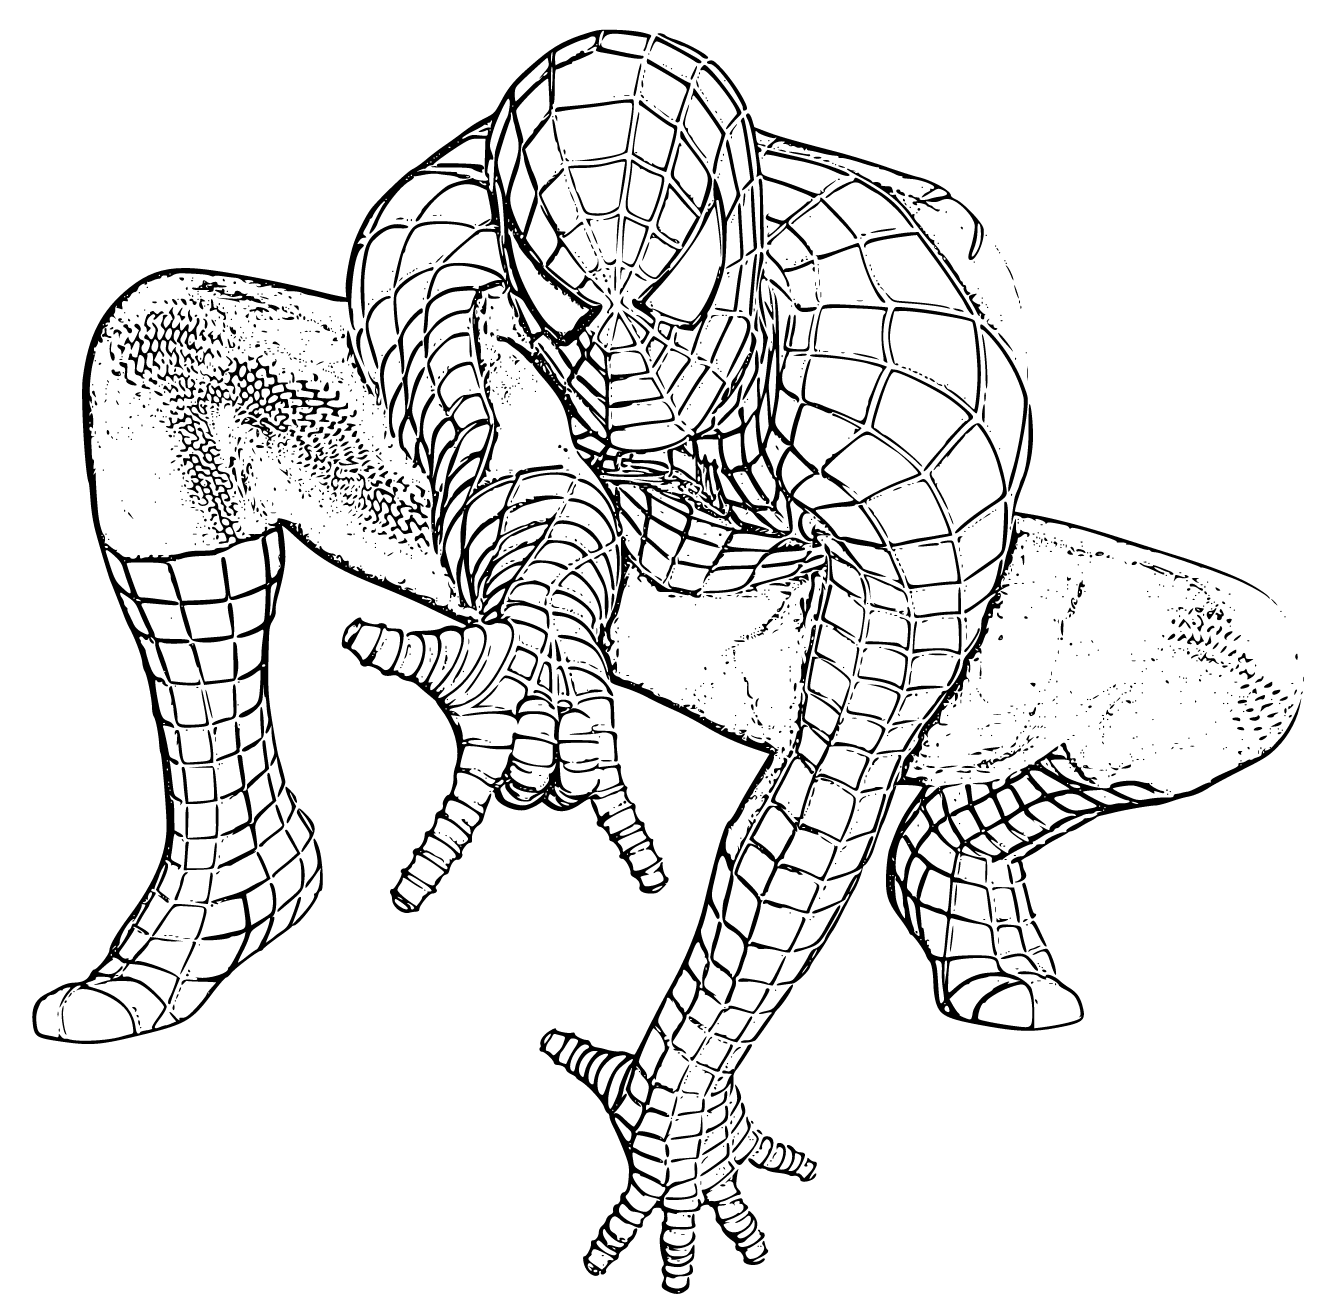 SpiderMan Coloring Page 9 - SheetalColor.com